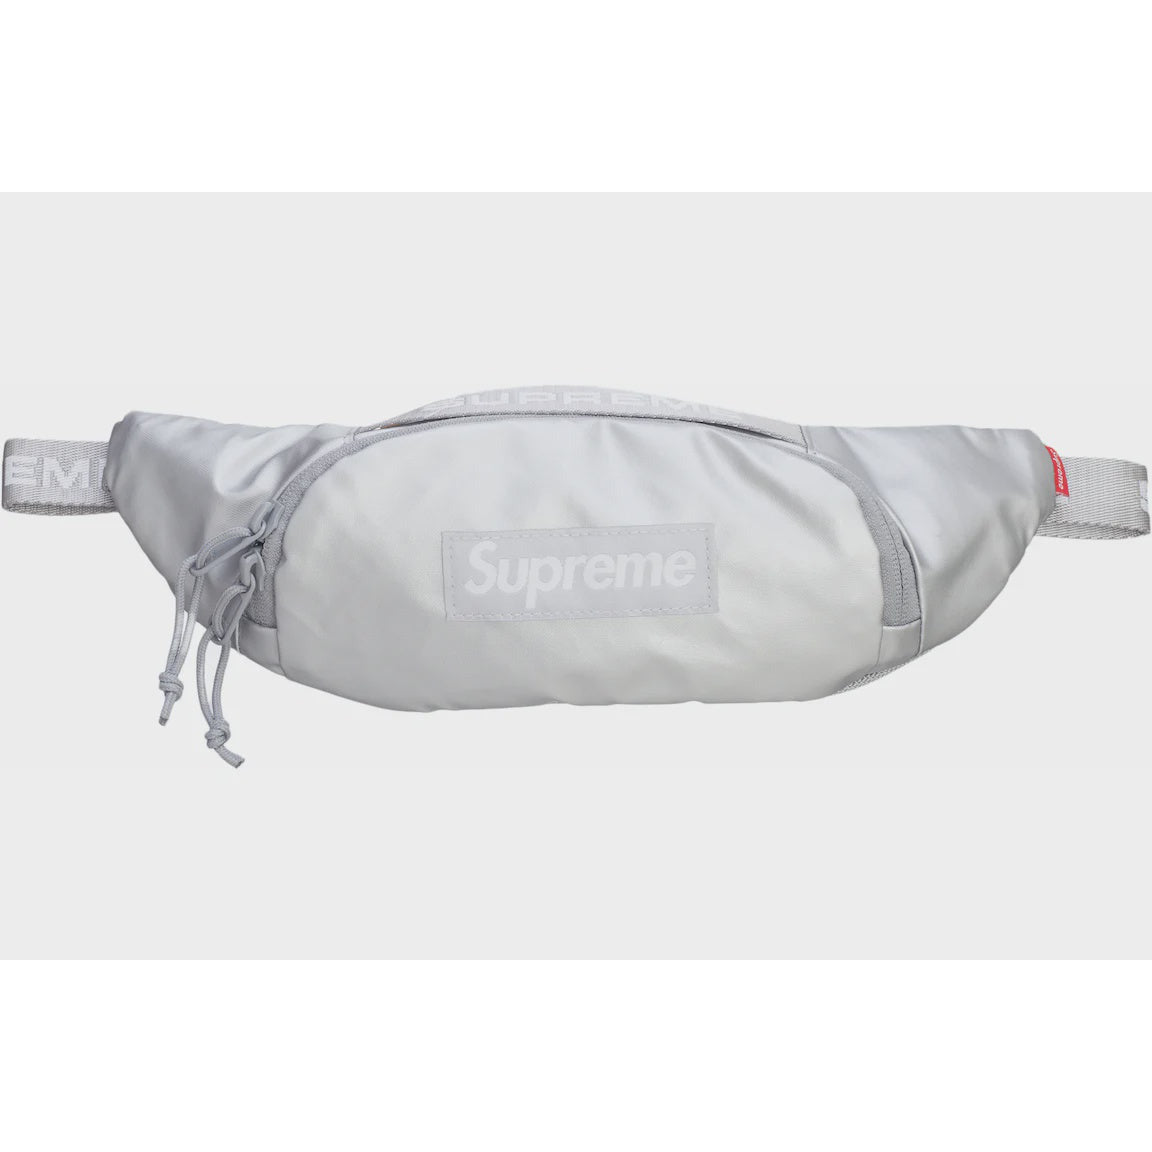 Supreme Small Waist Bag (FW22) - Silver